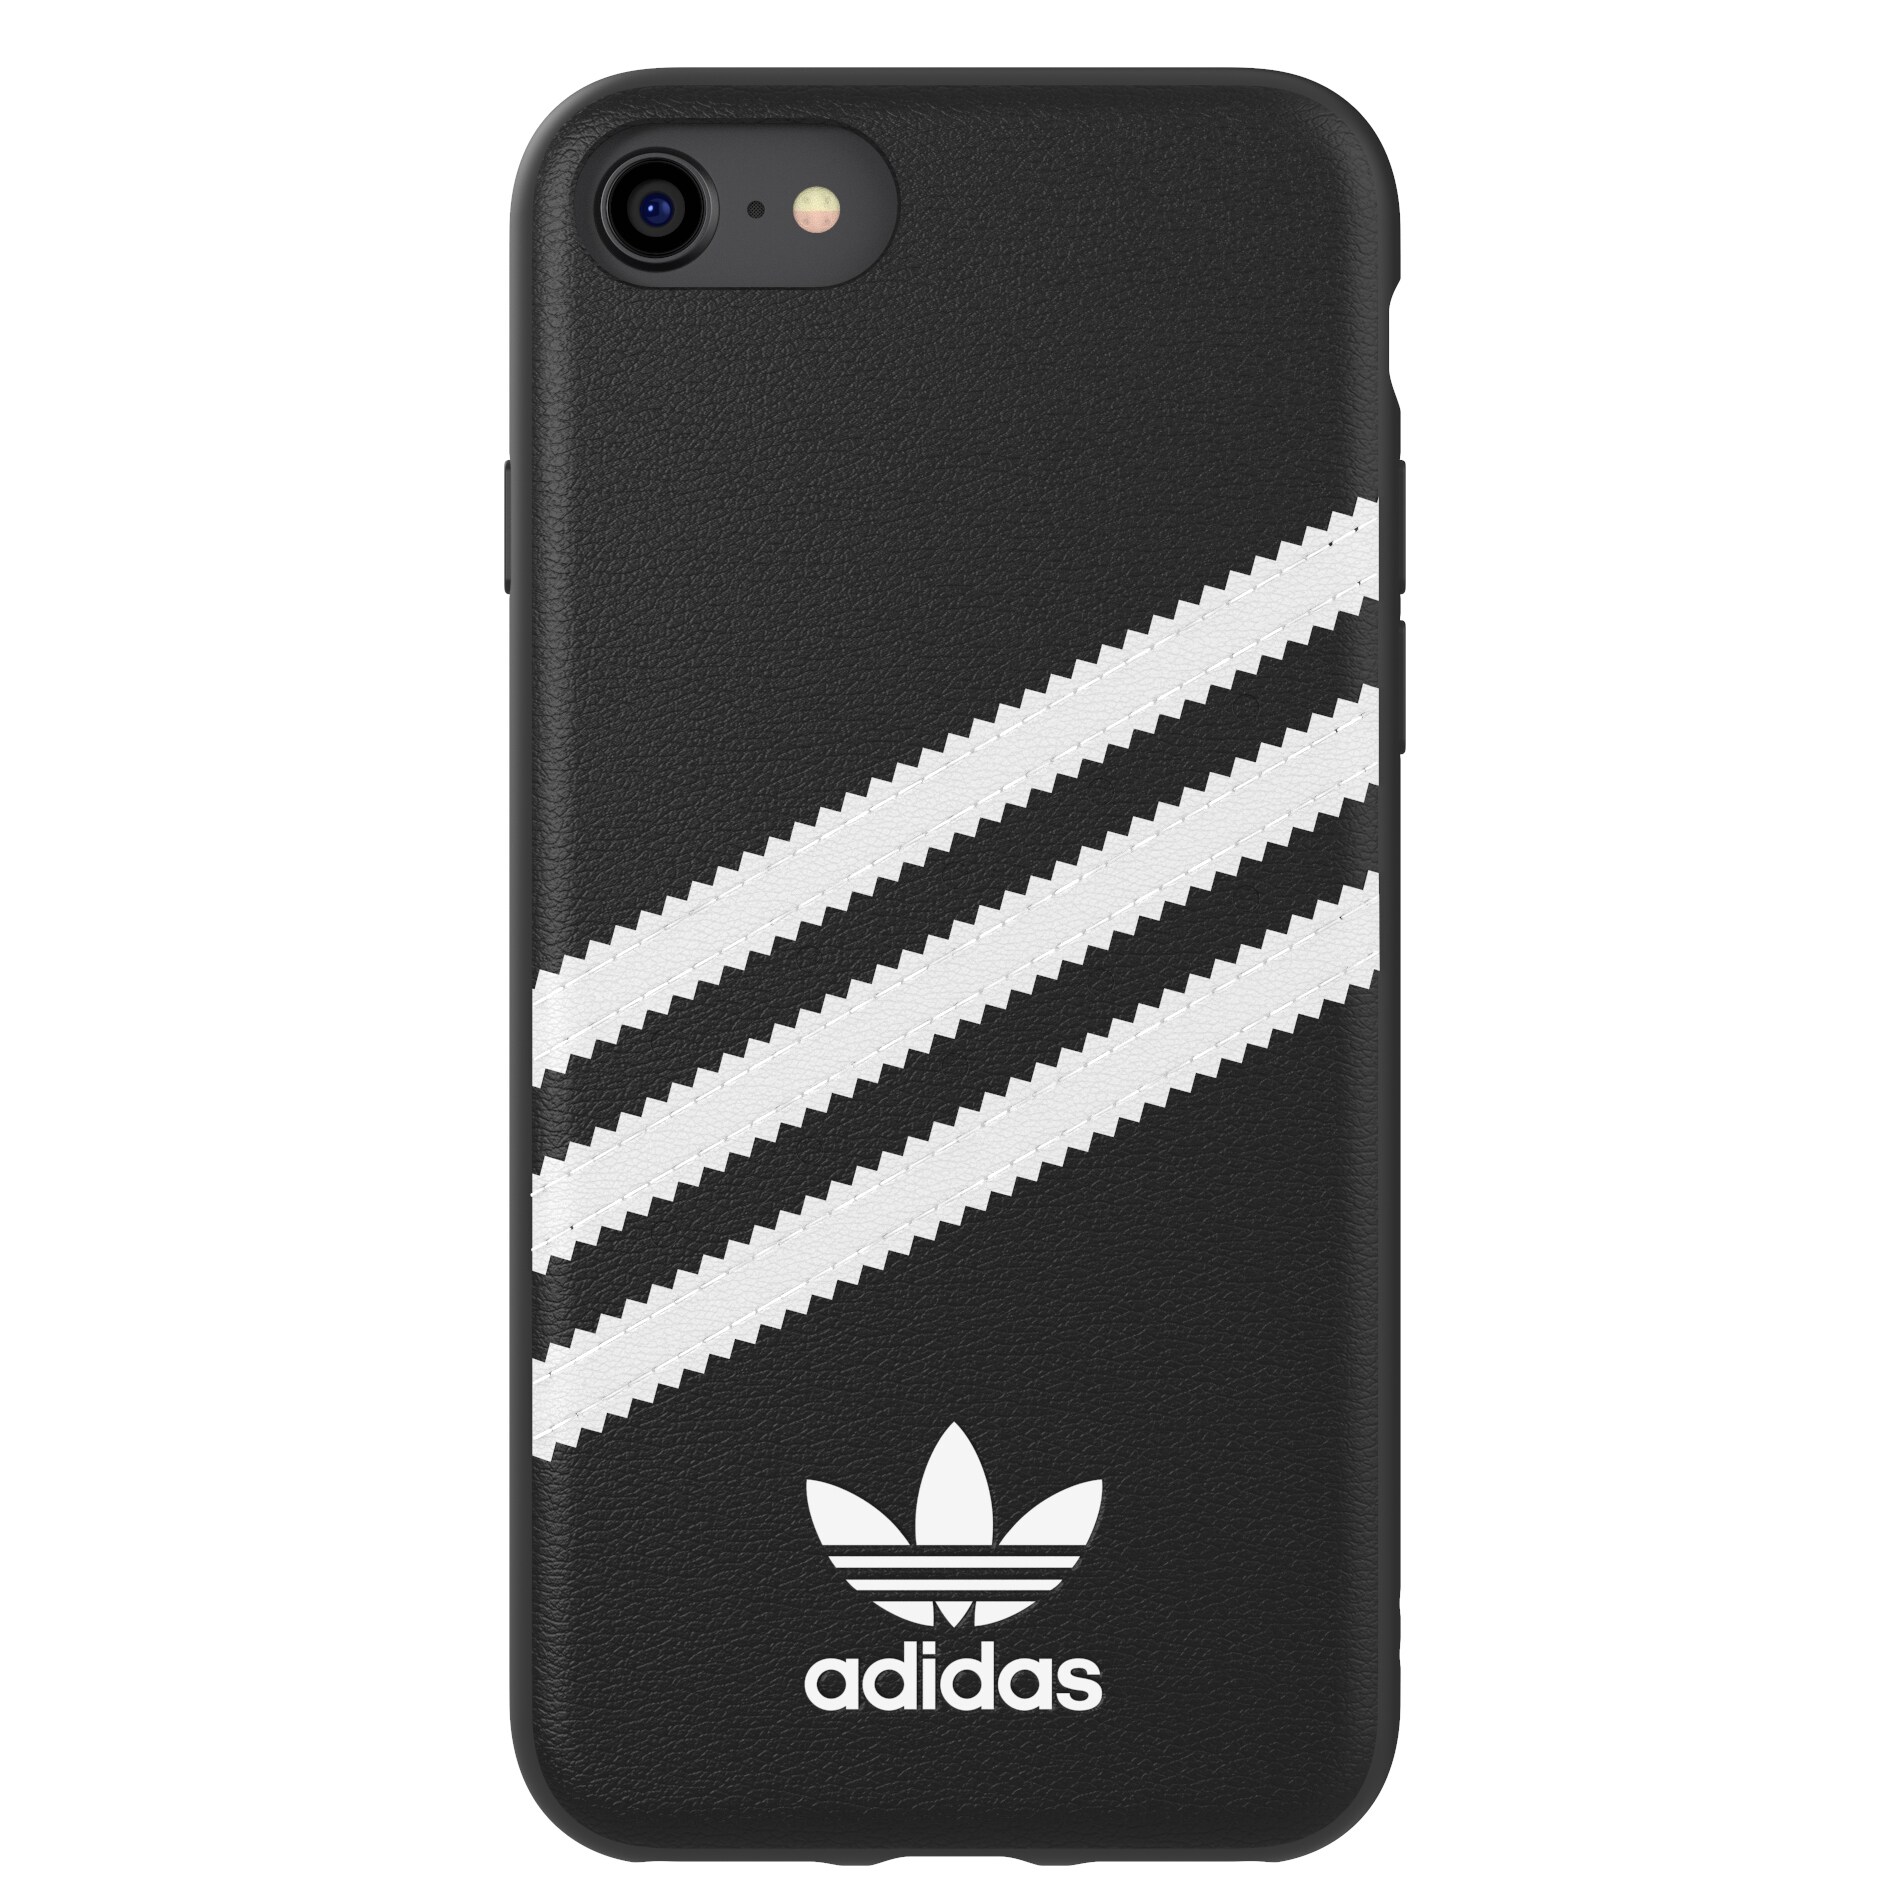 Adidas deksel iPhone 6/6s/7/8 (sort og hvit) - Elkjøp